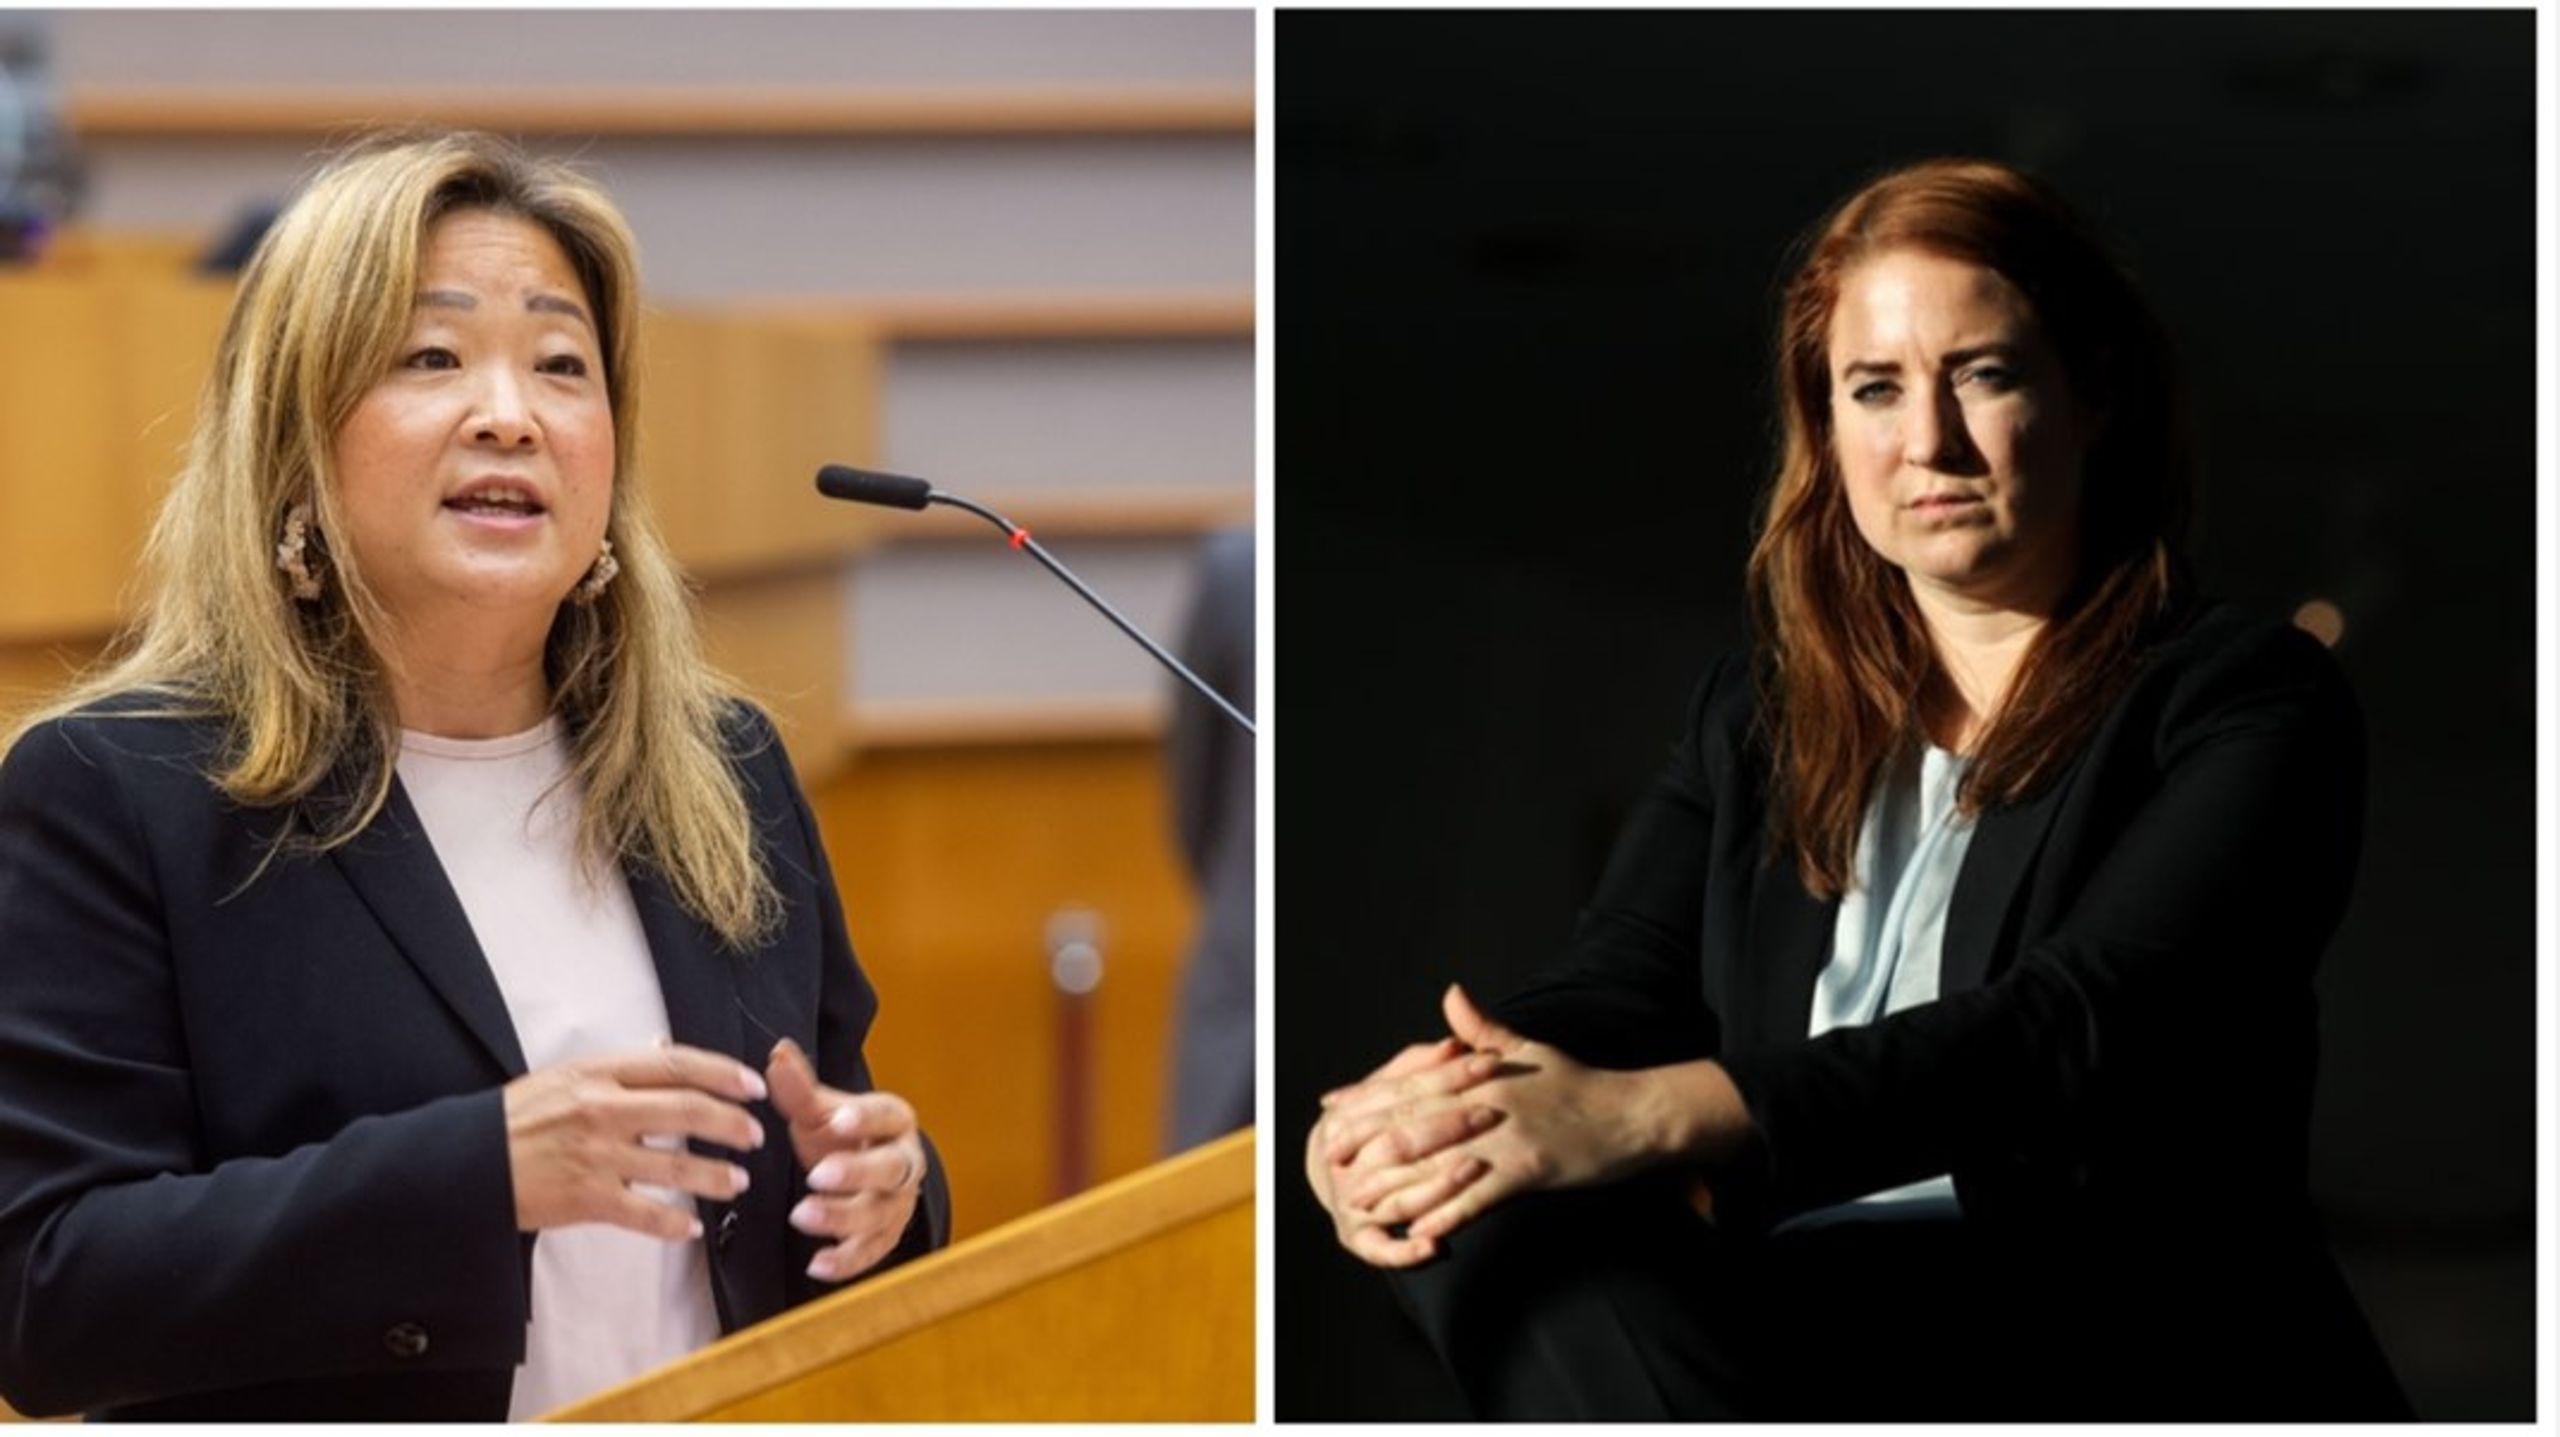 M- och C-parlamentarikerna Jessica Polfjärd och Emma Wiesner välkomnar den ökade pressen på myndigheter att assistera och snabba på ansökningar för att öka EU:s självförsörjning av kritiska råvaror. <br>